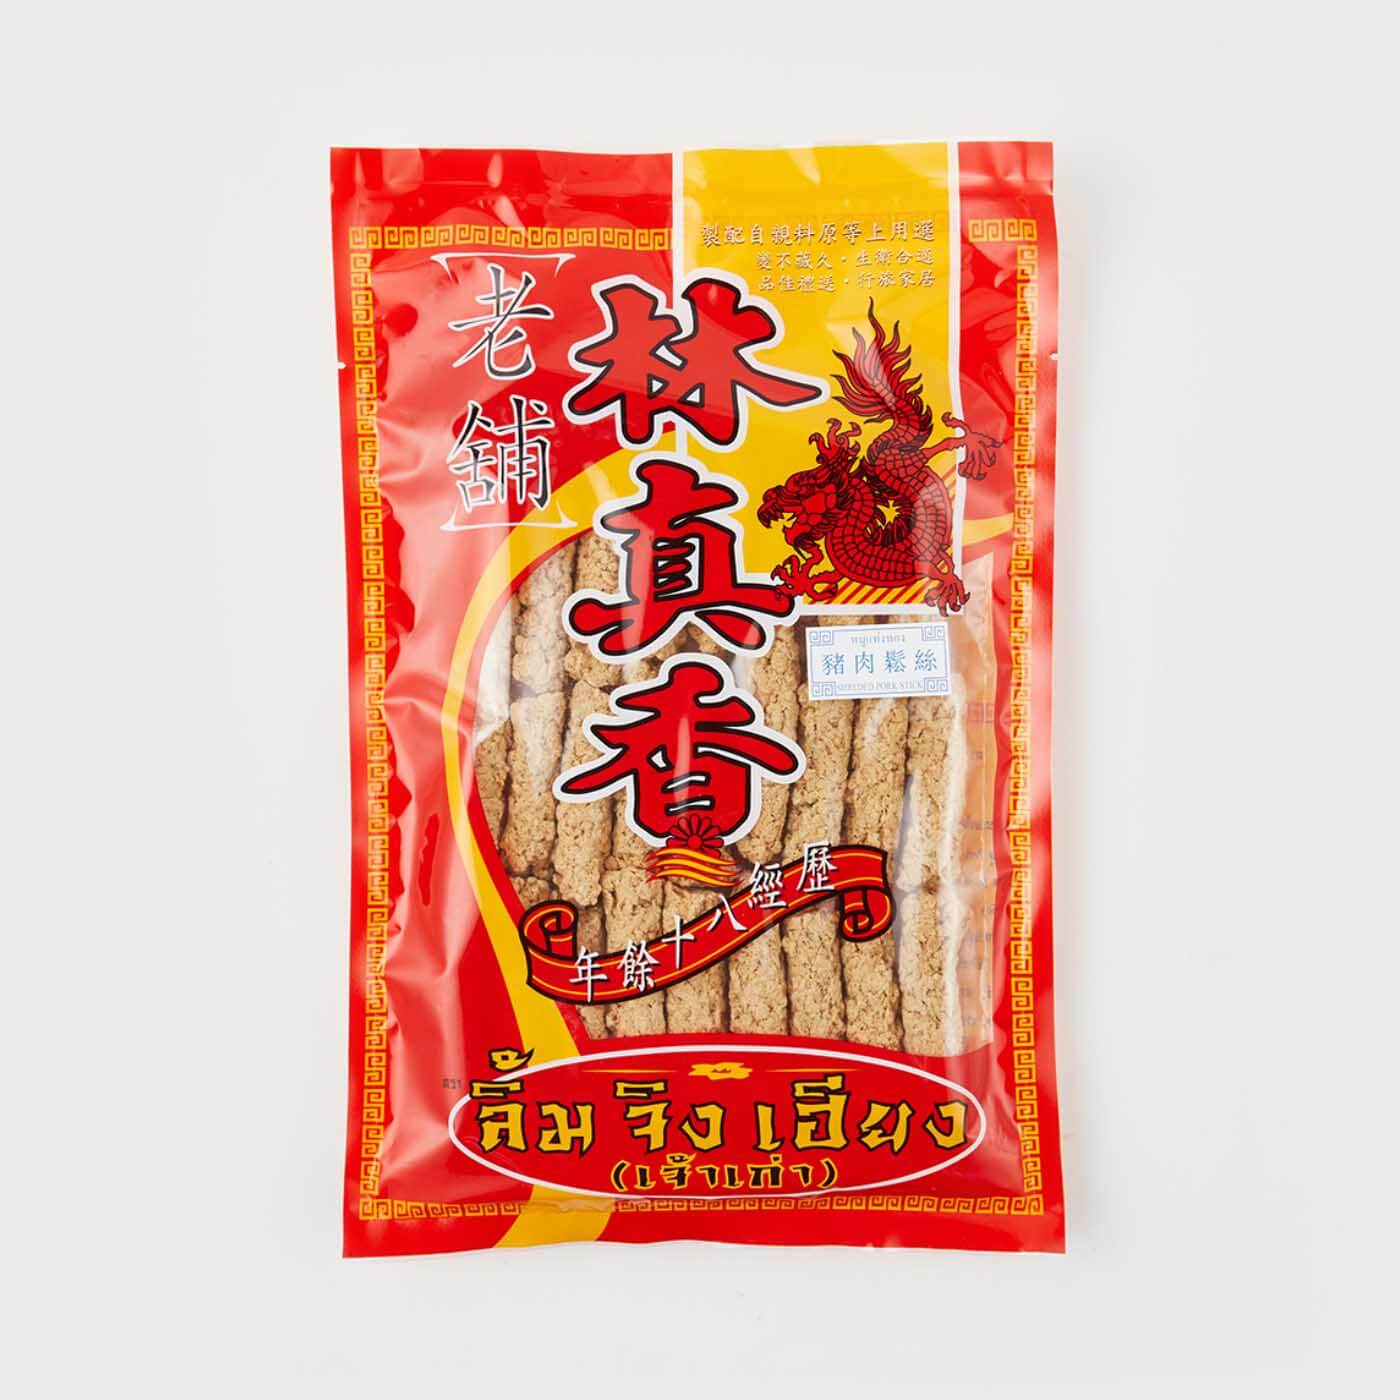 林真香[老舖] LIM JING HIENG Shredded Stick Pork 300 g_免税价格_亿点免税